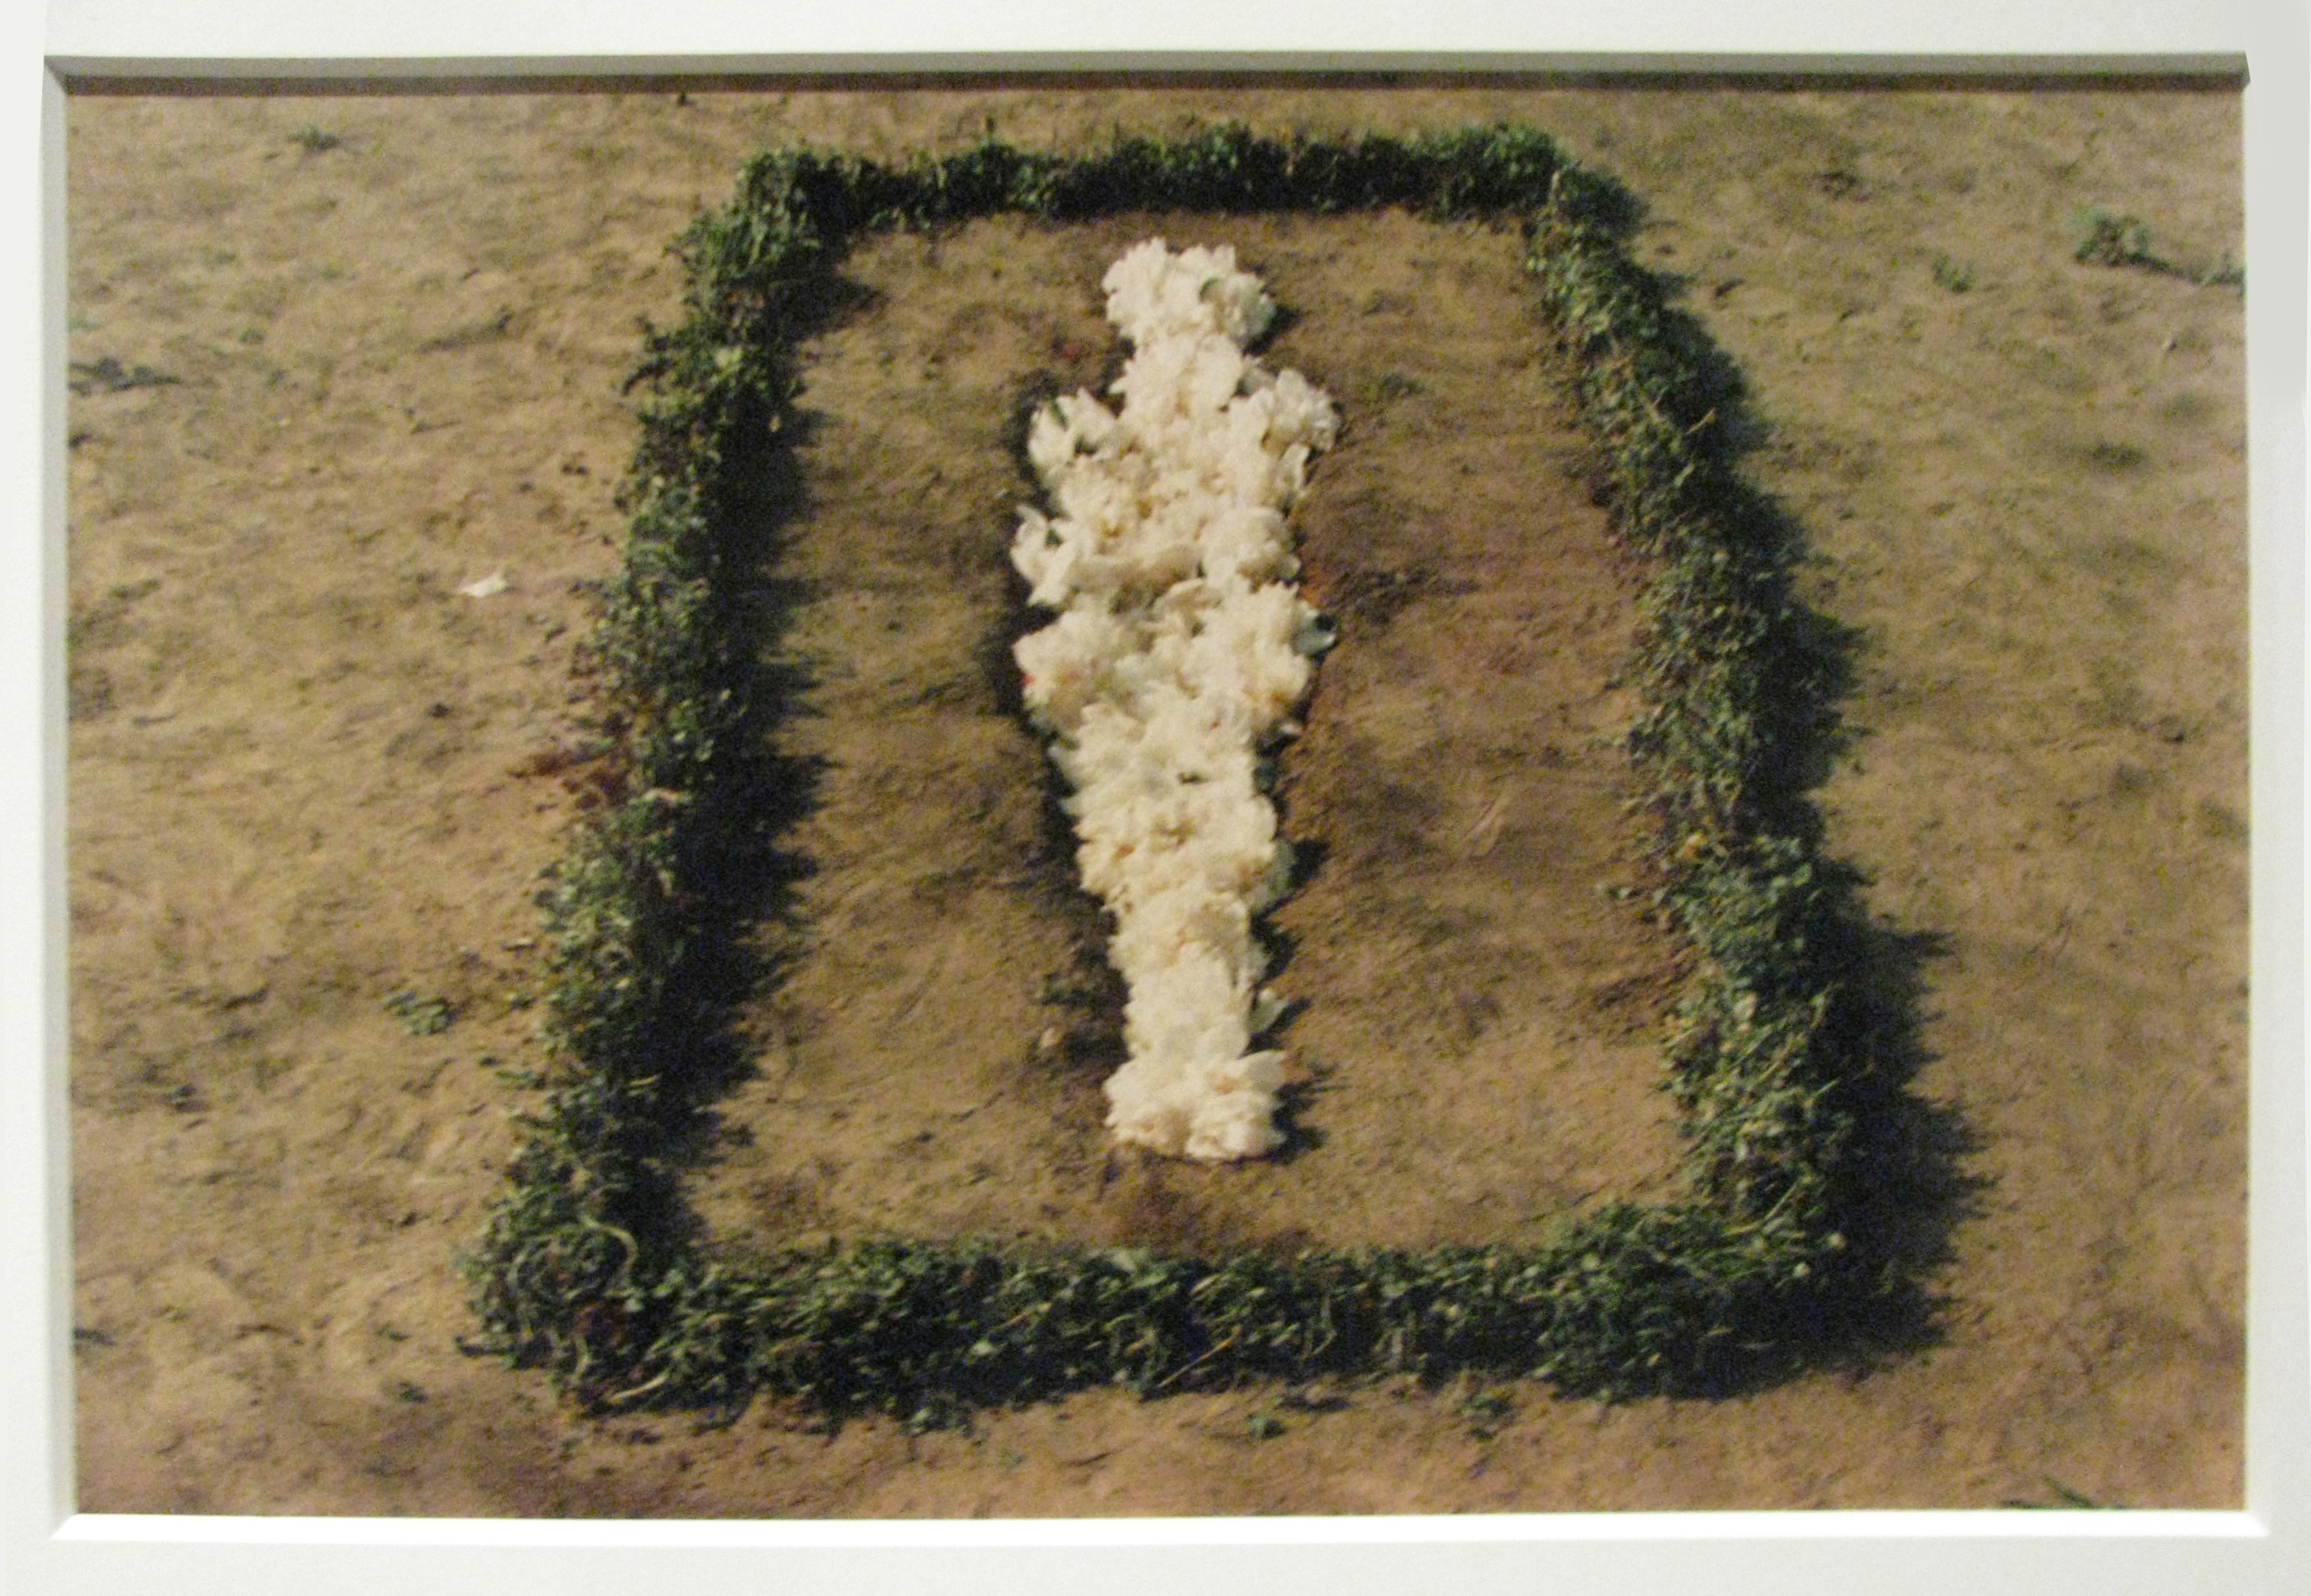 Senza titolo da Silueta Series, Messico, 1973-77. Collezione privata. Nevada Art Museum